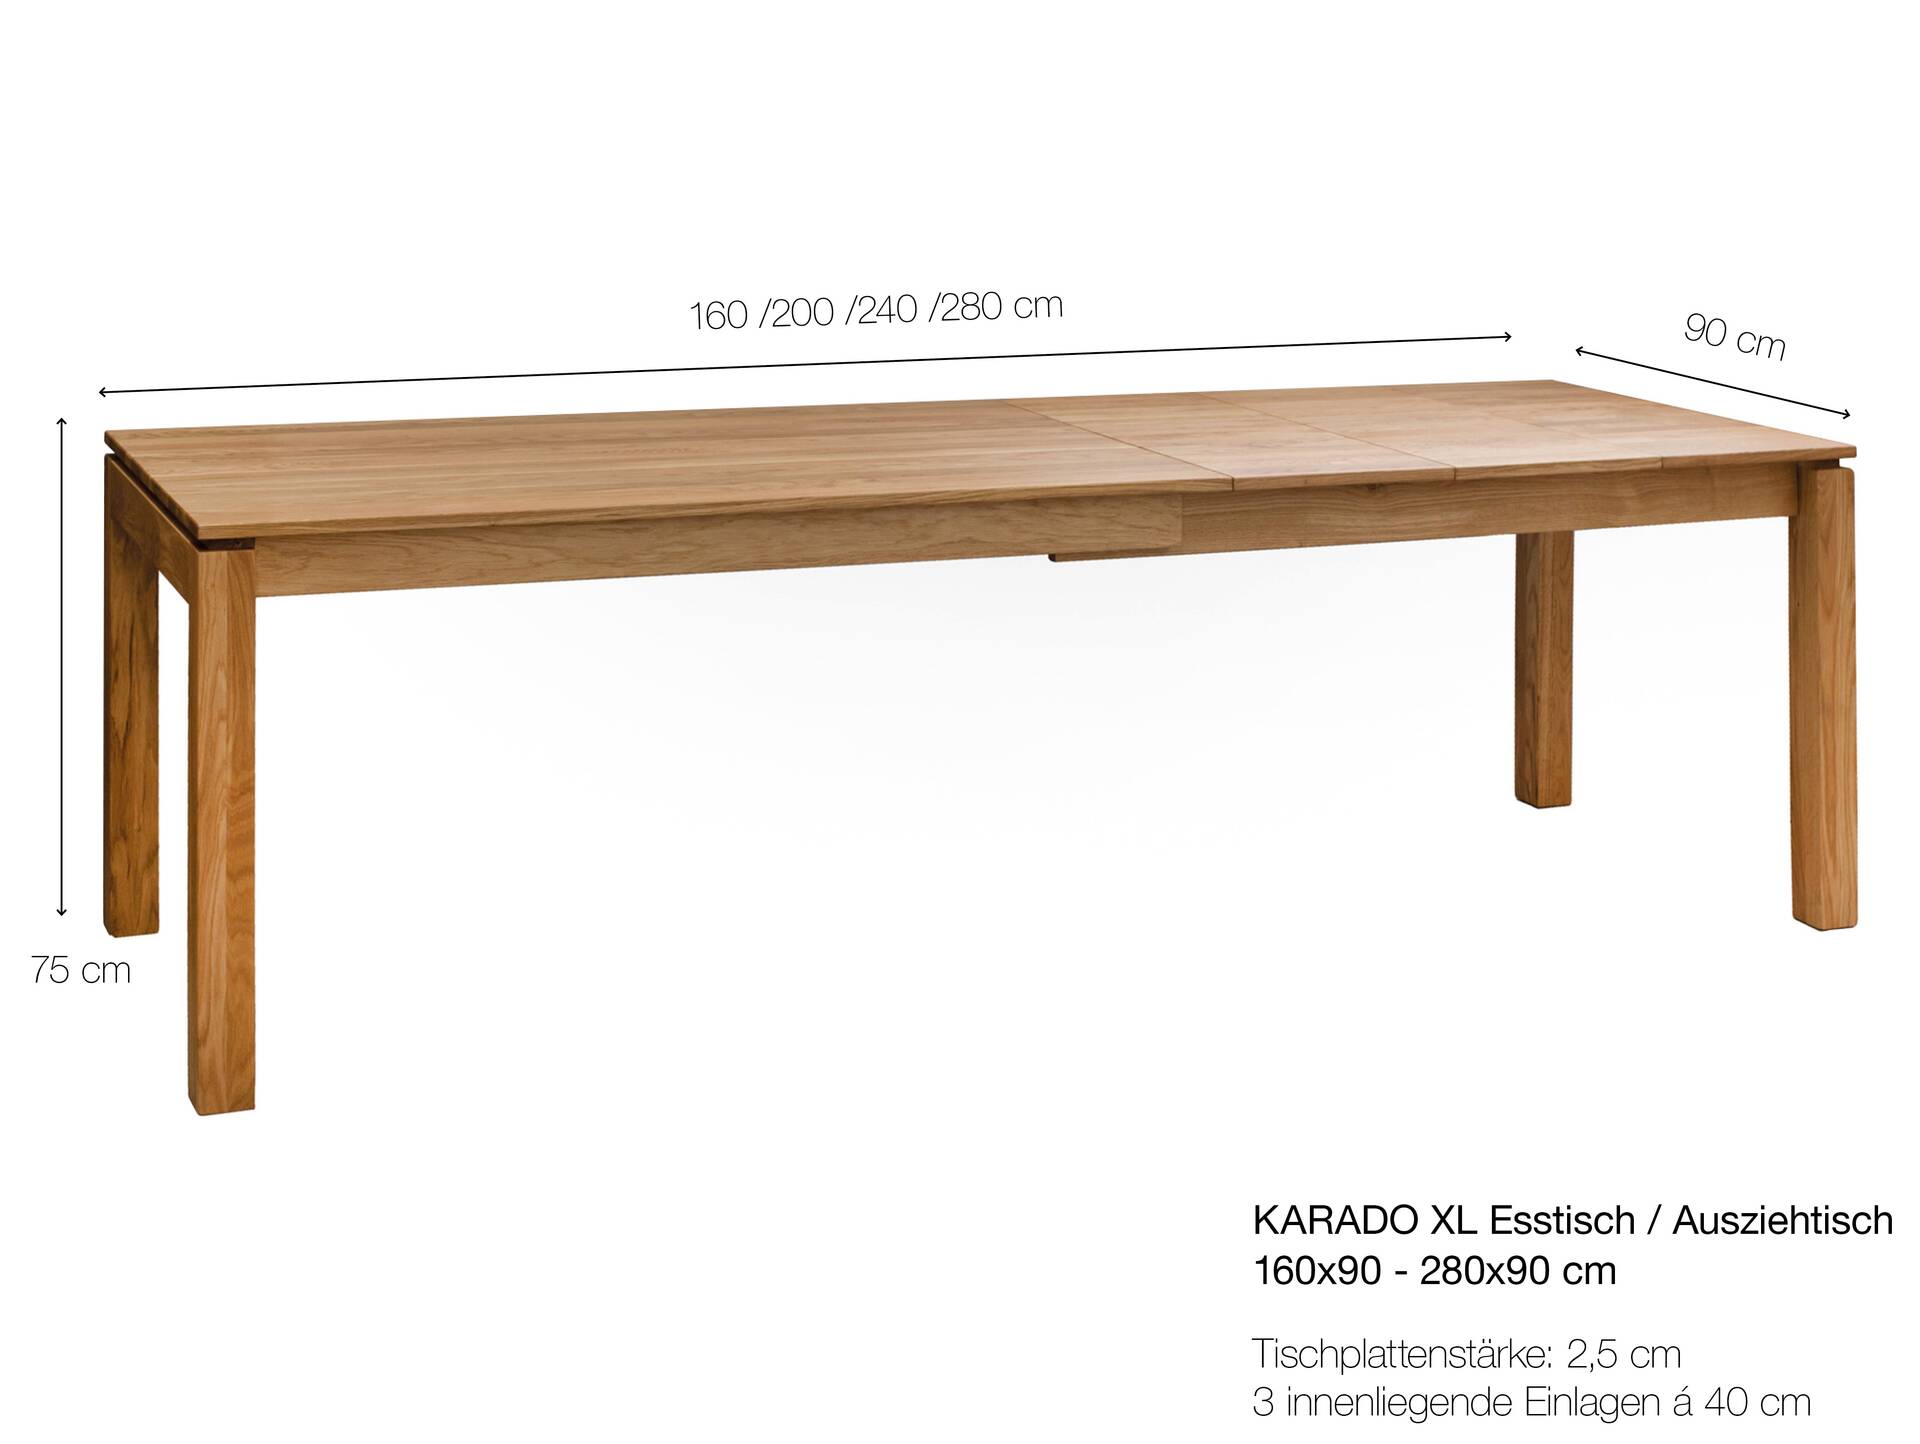 KARADO XL Esstisch / Ausziehtisch, Material Massivholz, Eiche, 160x90 - 280x90 cm 